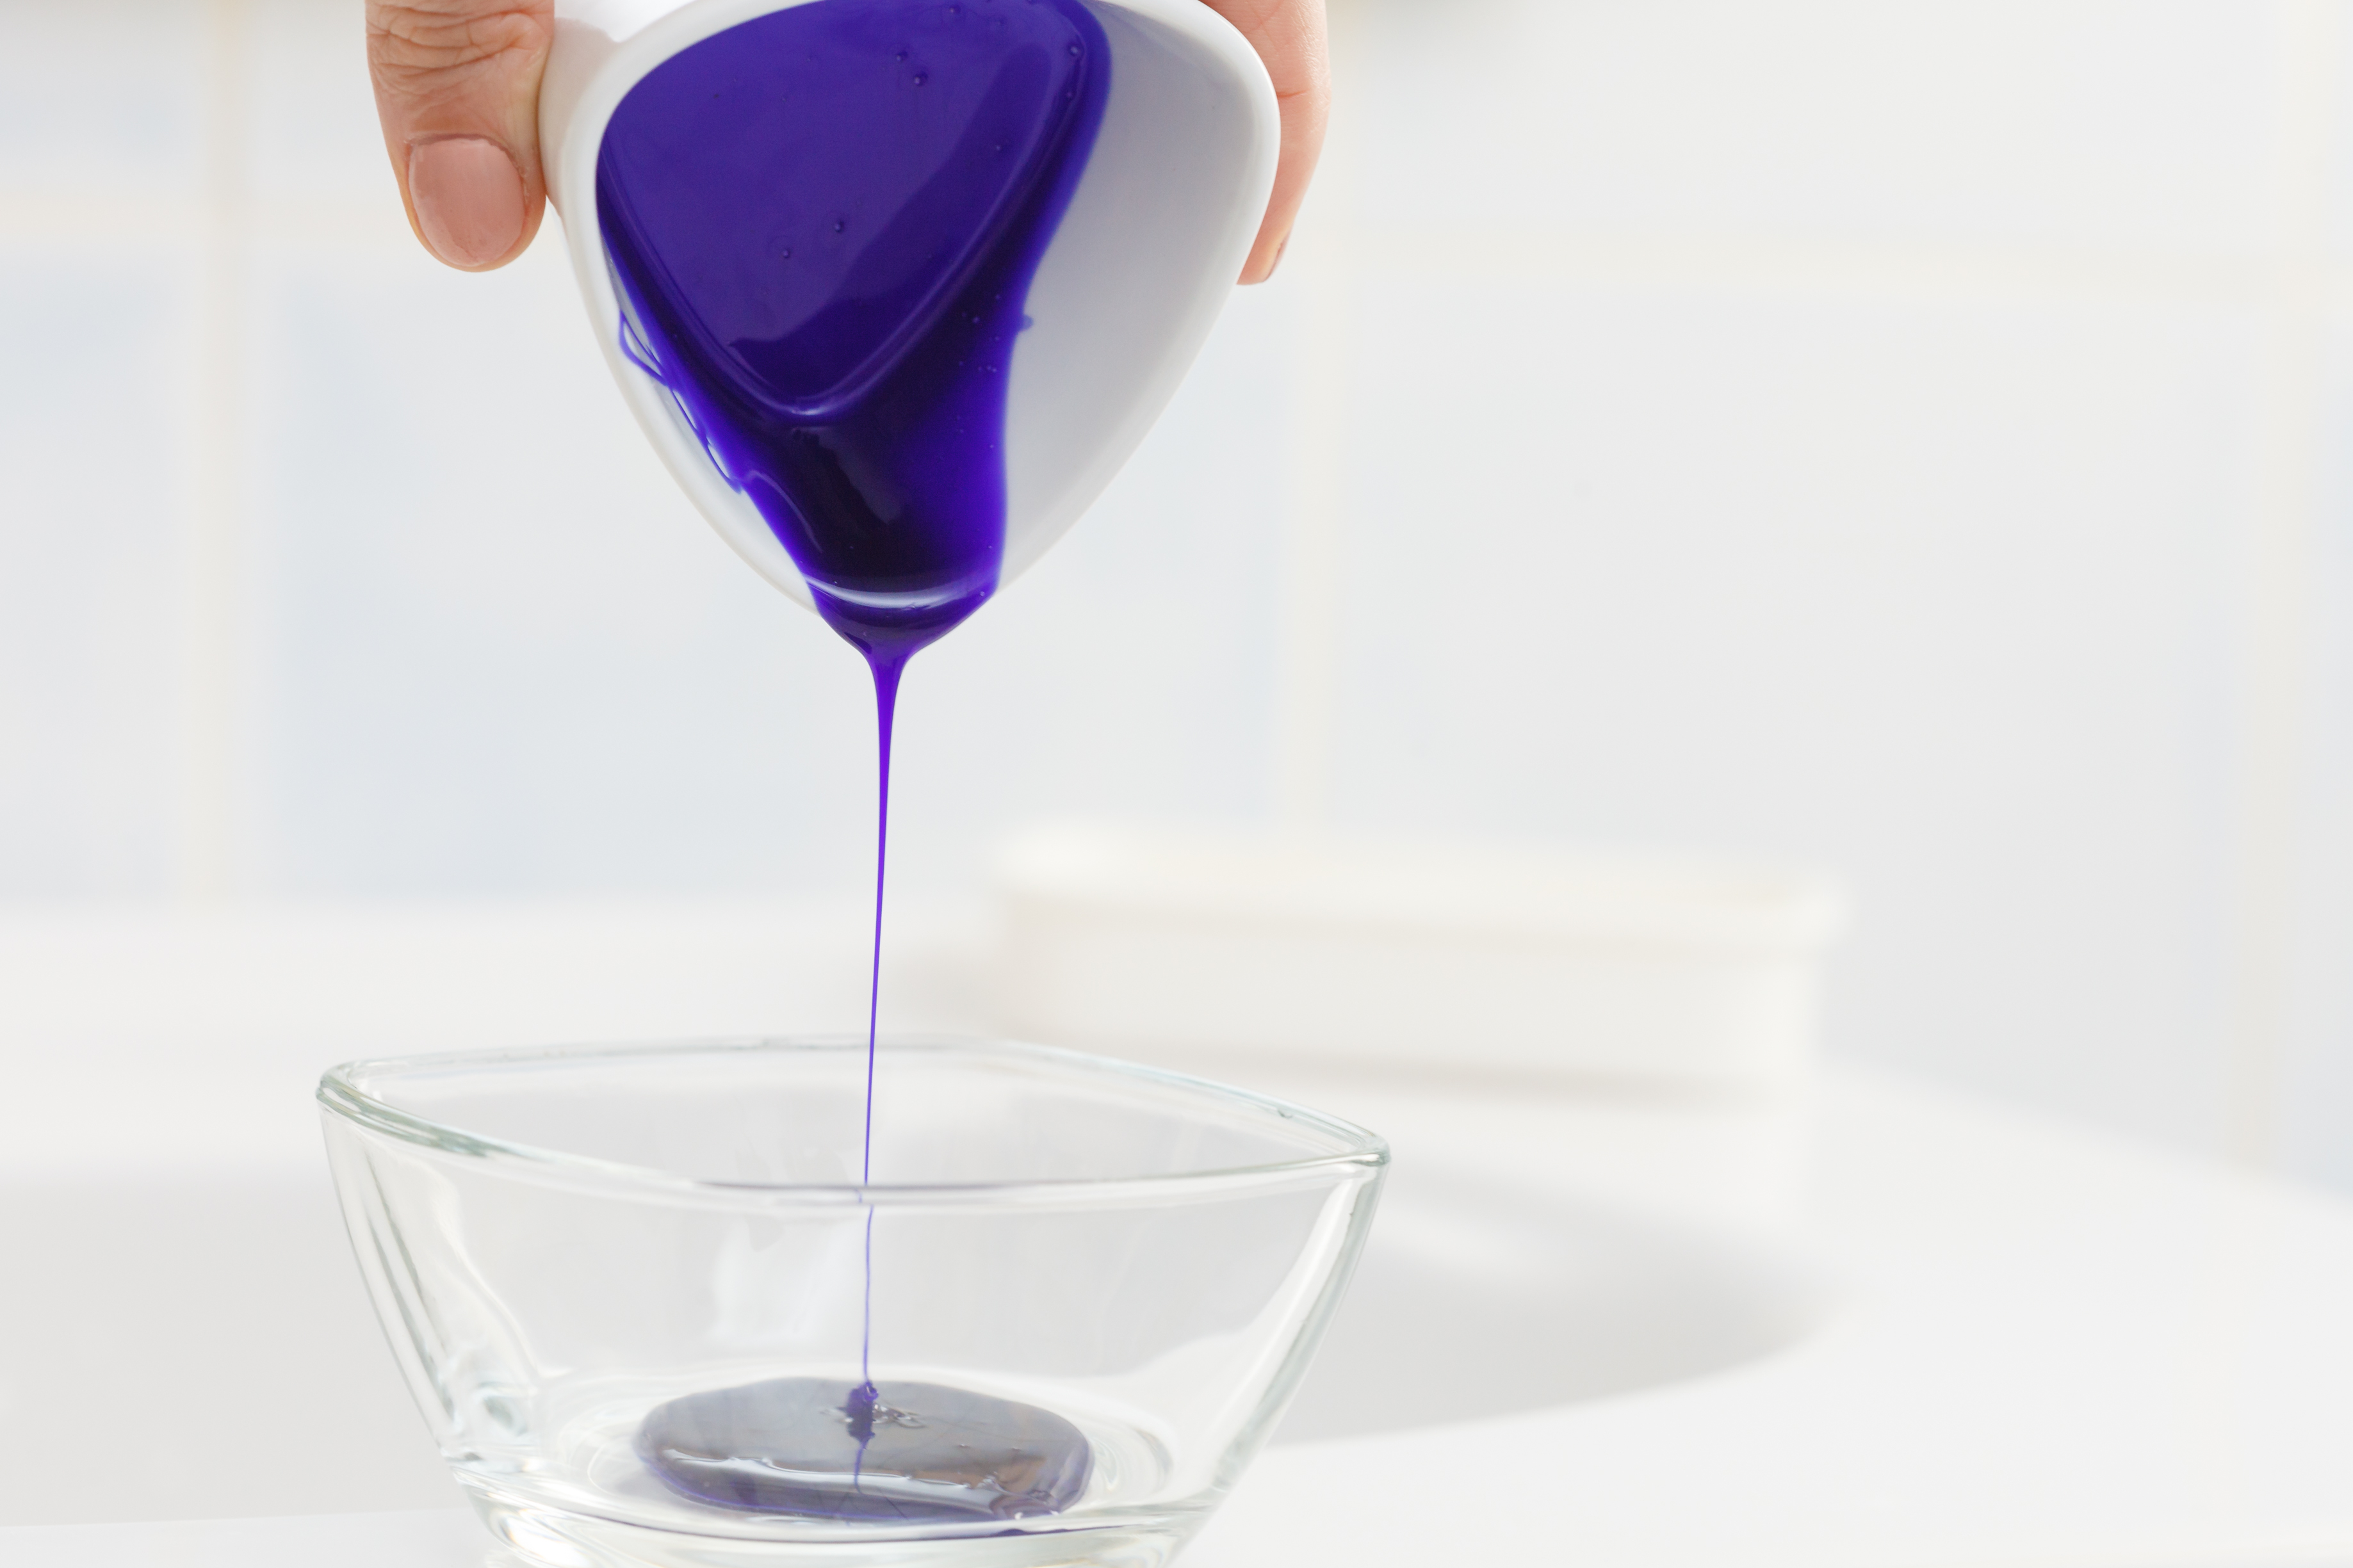 Choose a purple-toned shampoo